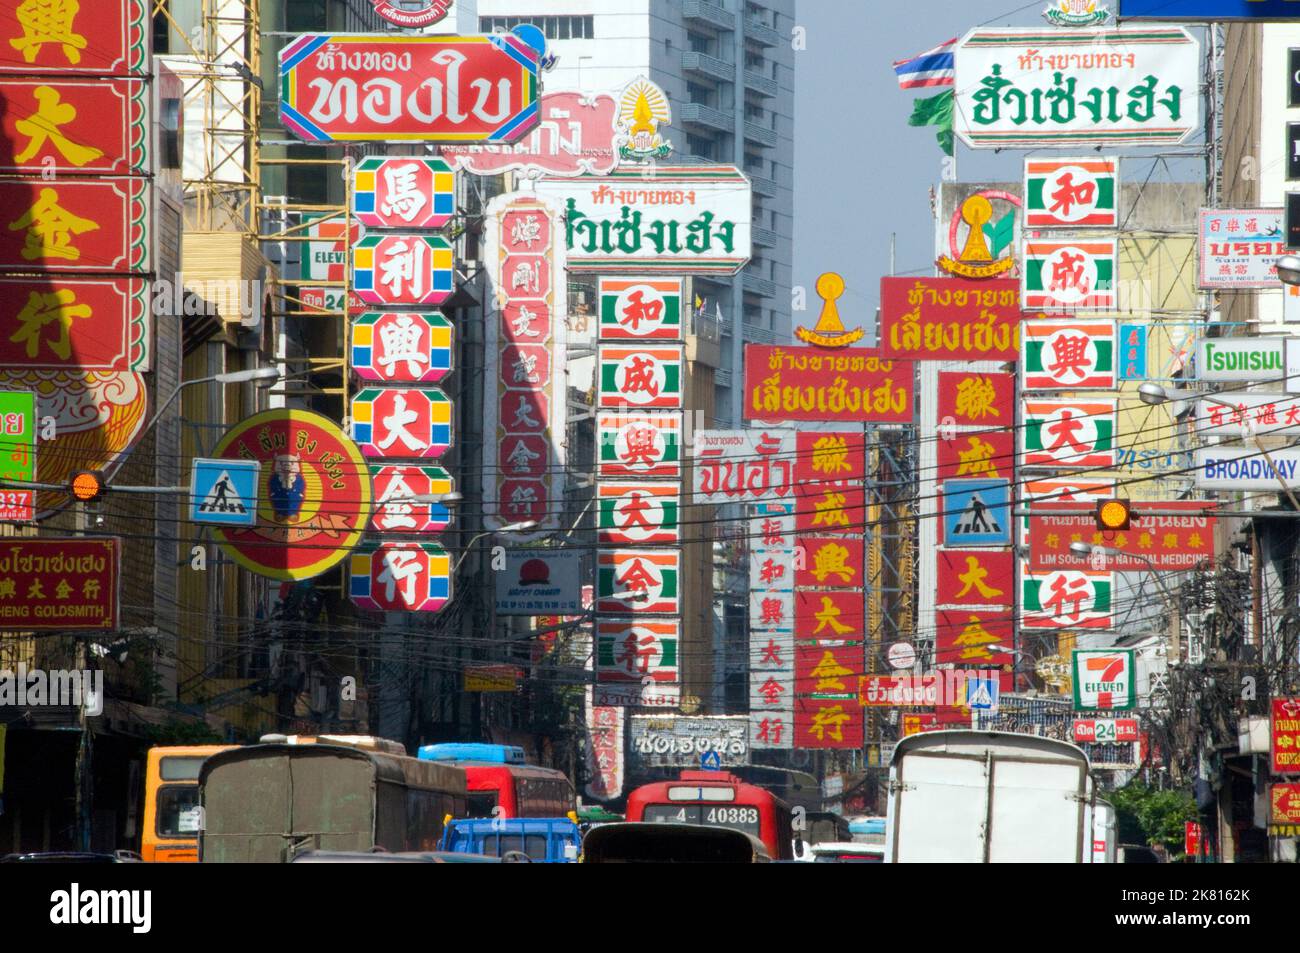 Tailandia: Tráfico y señales en Yaowarat Road, Chinatown, Bangkok (2008). El barrio chino de Bangkok es uno de los chinos más grandes del mundo. Fue fundada en 1782 cuando la ciudad fue establecida como la capital del Reino de Rattanakosin, y sirvió como el hogar de la población China inmigrante principalmente Teochew, que pronto se convirtió en el grupo étnico dominante de la ciudad. Foto de stock